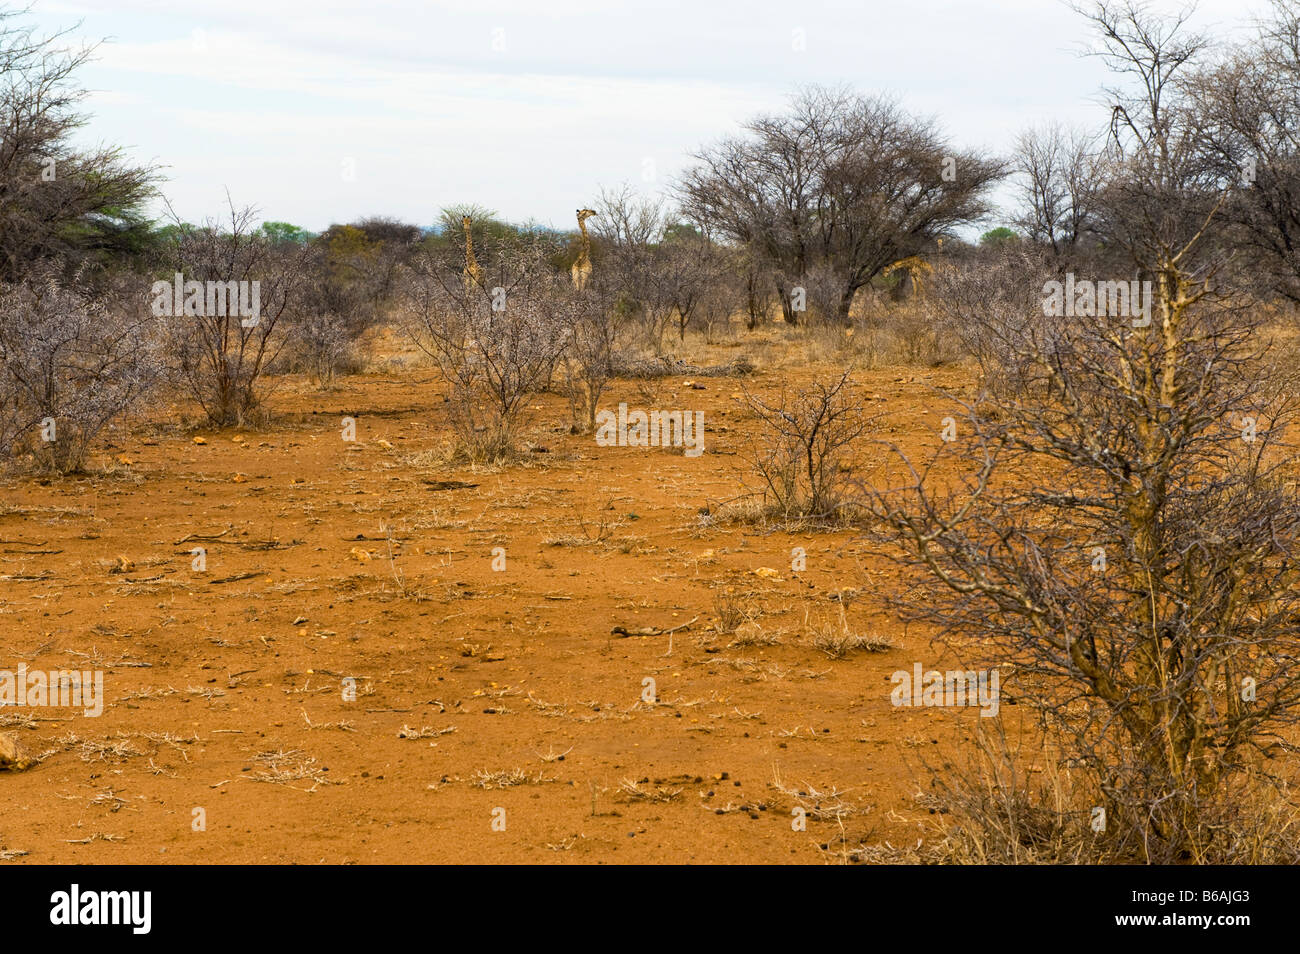 La masse de la terre rouge du sud afrique-savanne savane bush paysage forestiers acacia d'Afrique du Sud Banque D'Images